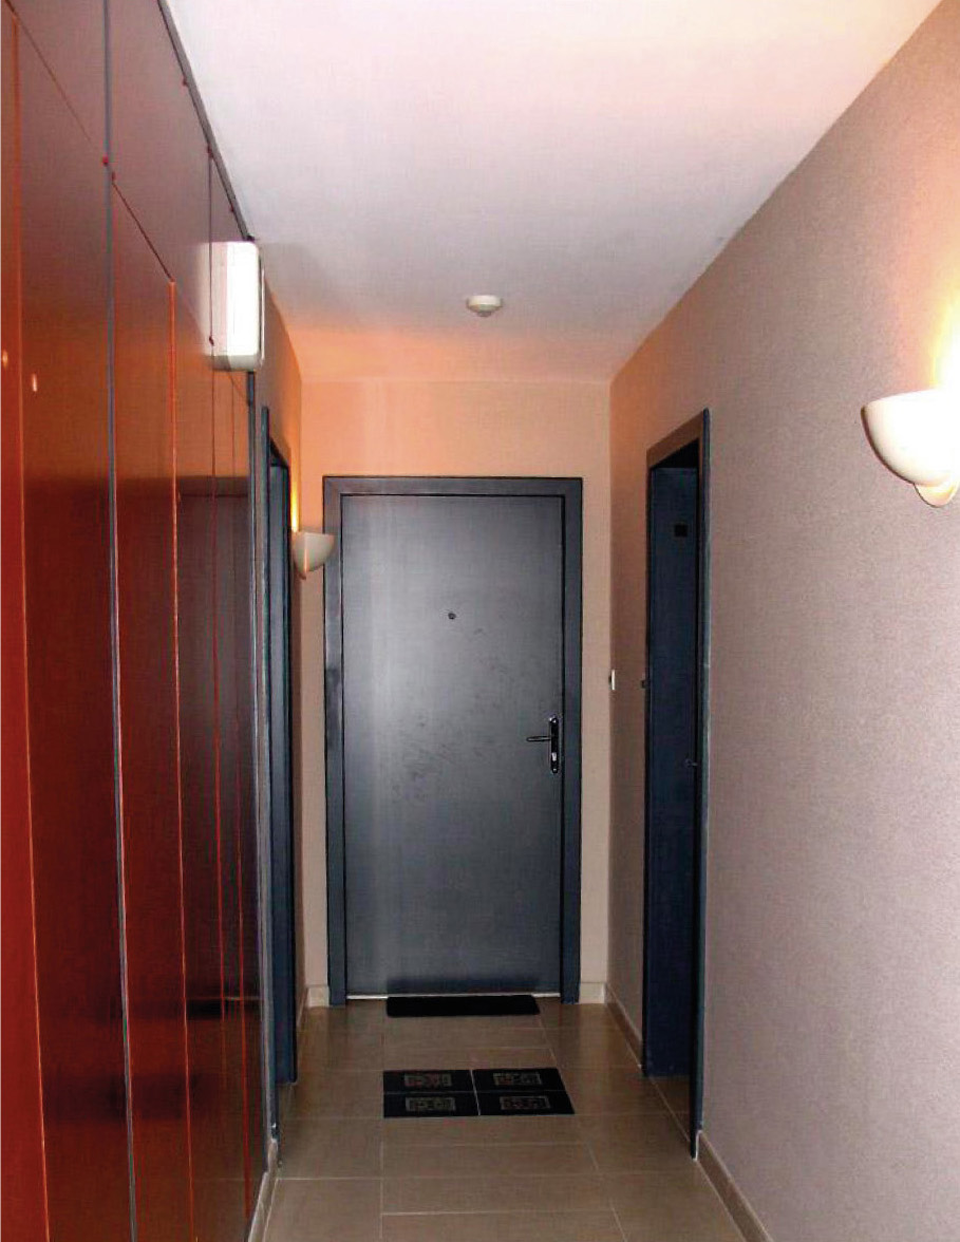 Couloir intérieur d'une partie commune d'un bâtiment ne possédant aucun revêtement absorbant, ce qui est non conforme